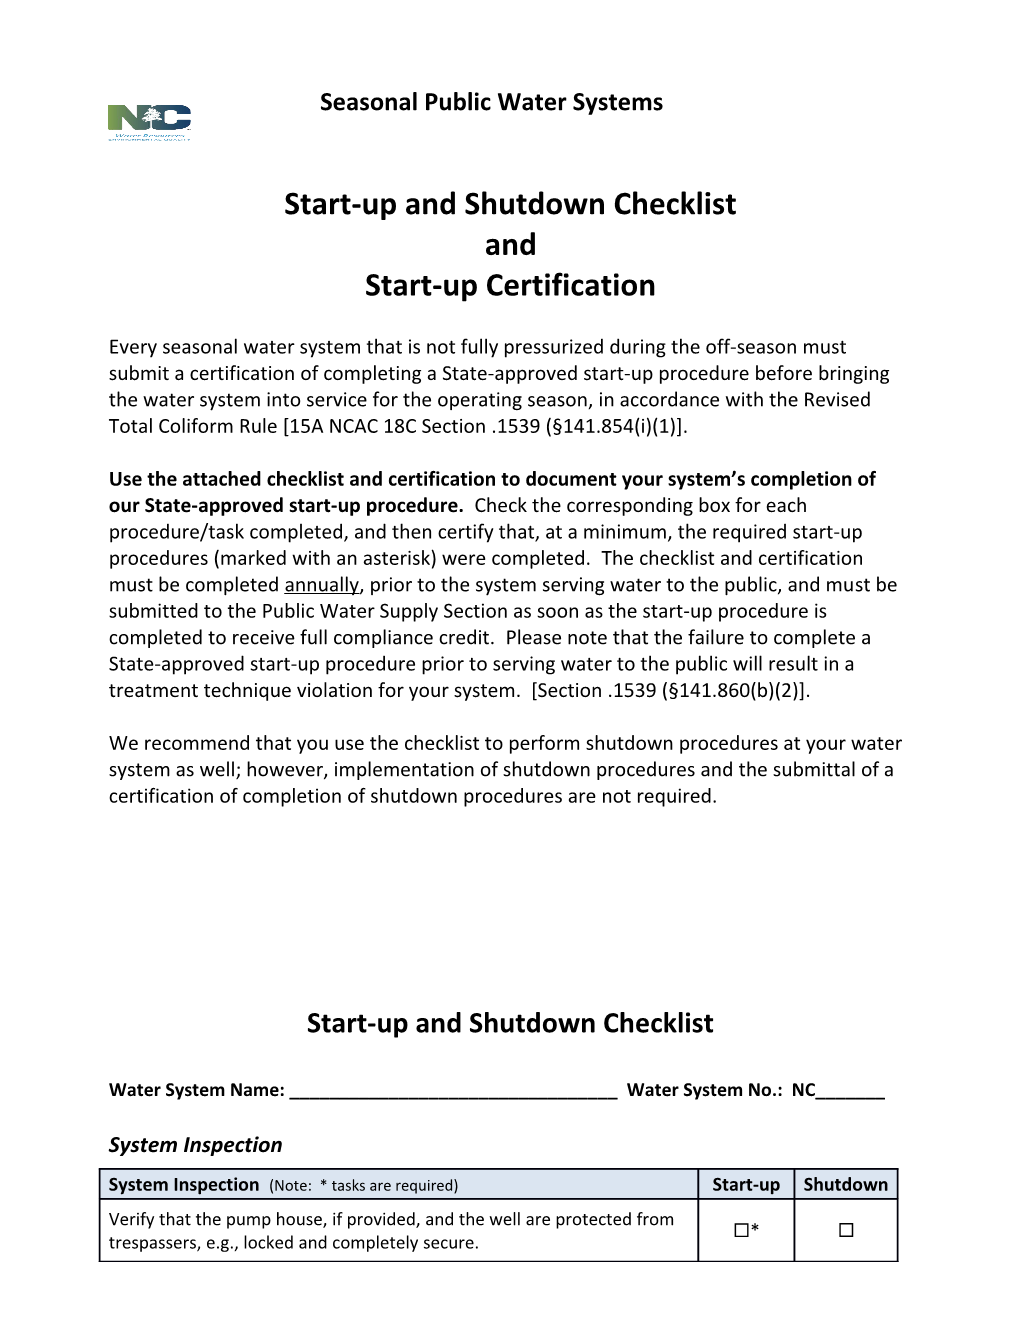 Start-Up and Shutdown Checklist